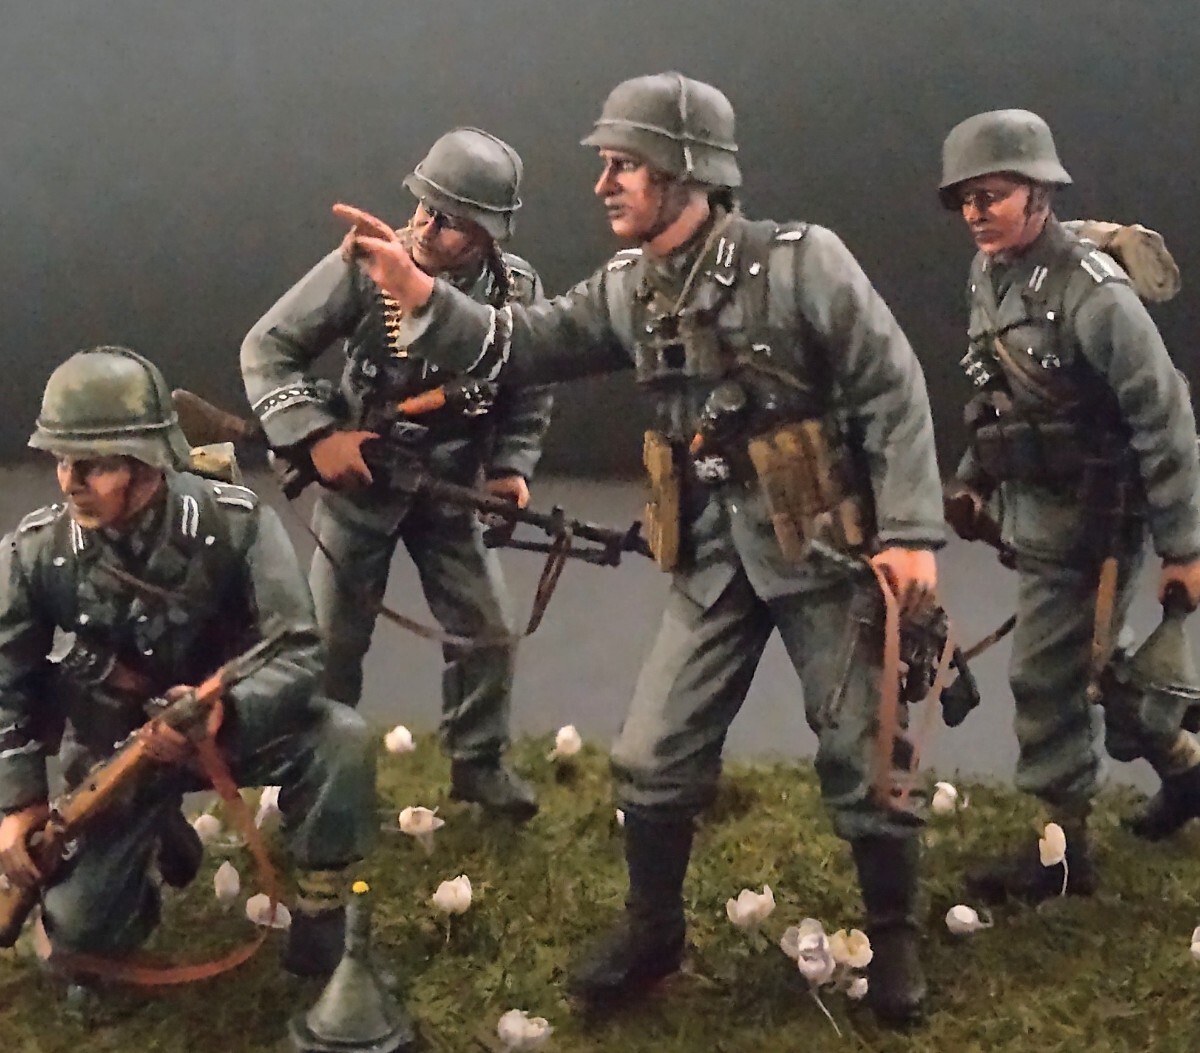 1/35 ドラゴン ドイツ歩兵 ウクライナ 1943 フィギュア完成品の画像1